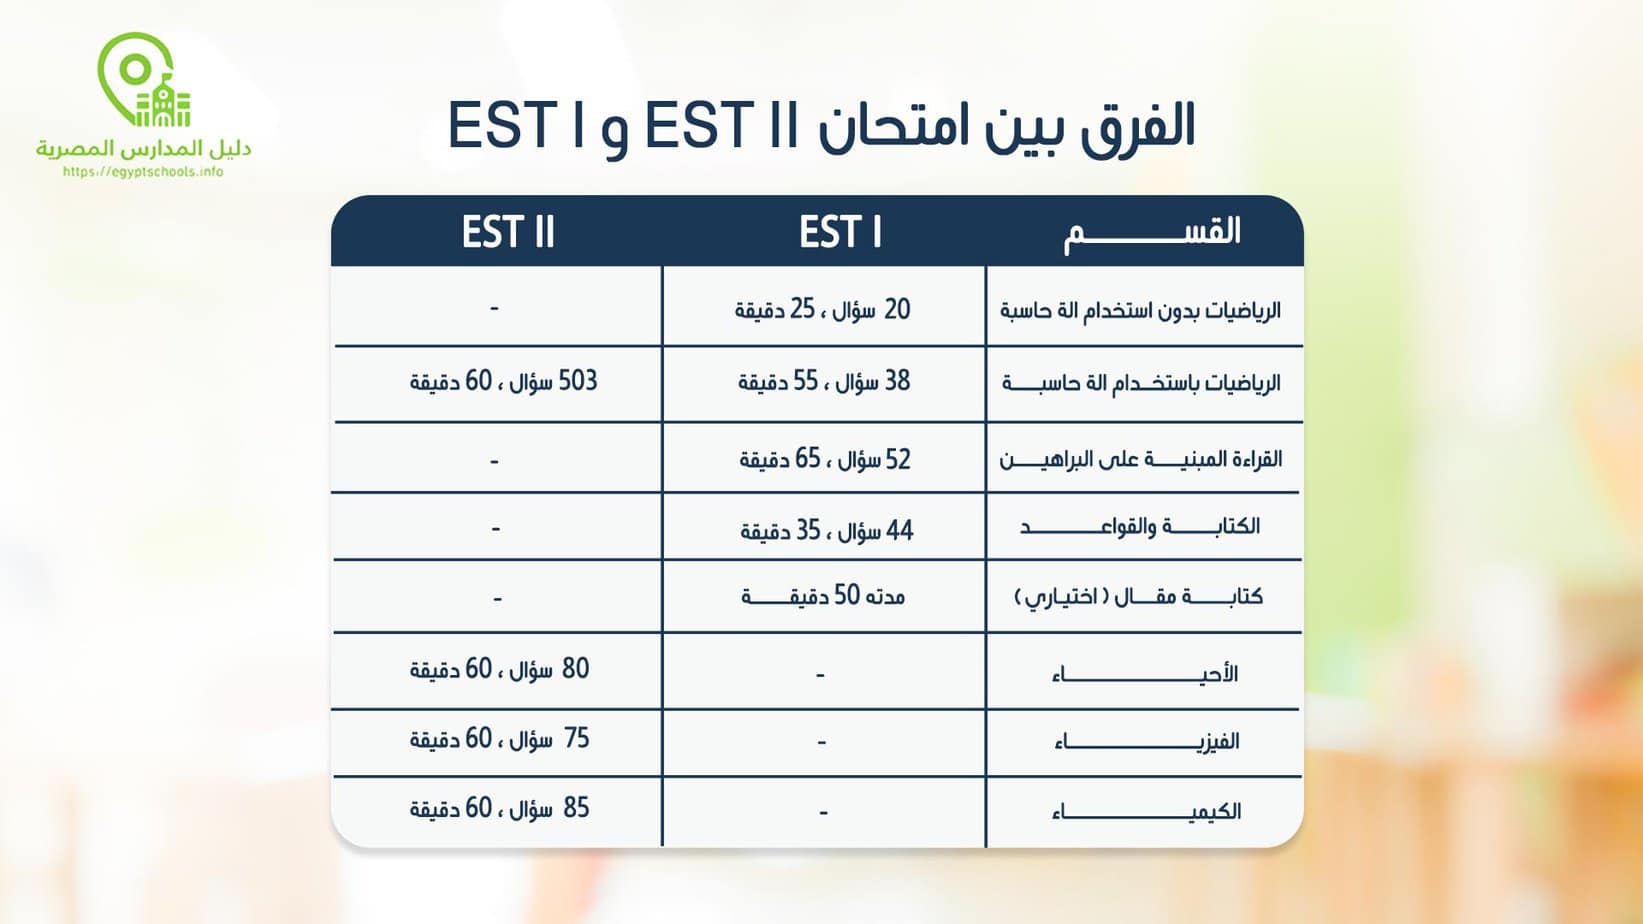 الفرق بين امتحان EST I و EST II